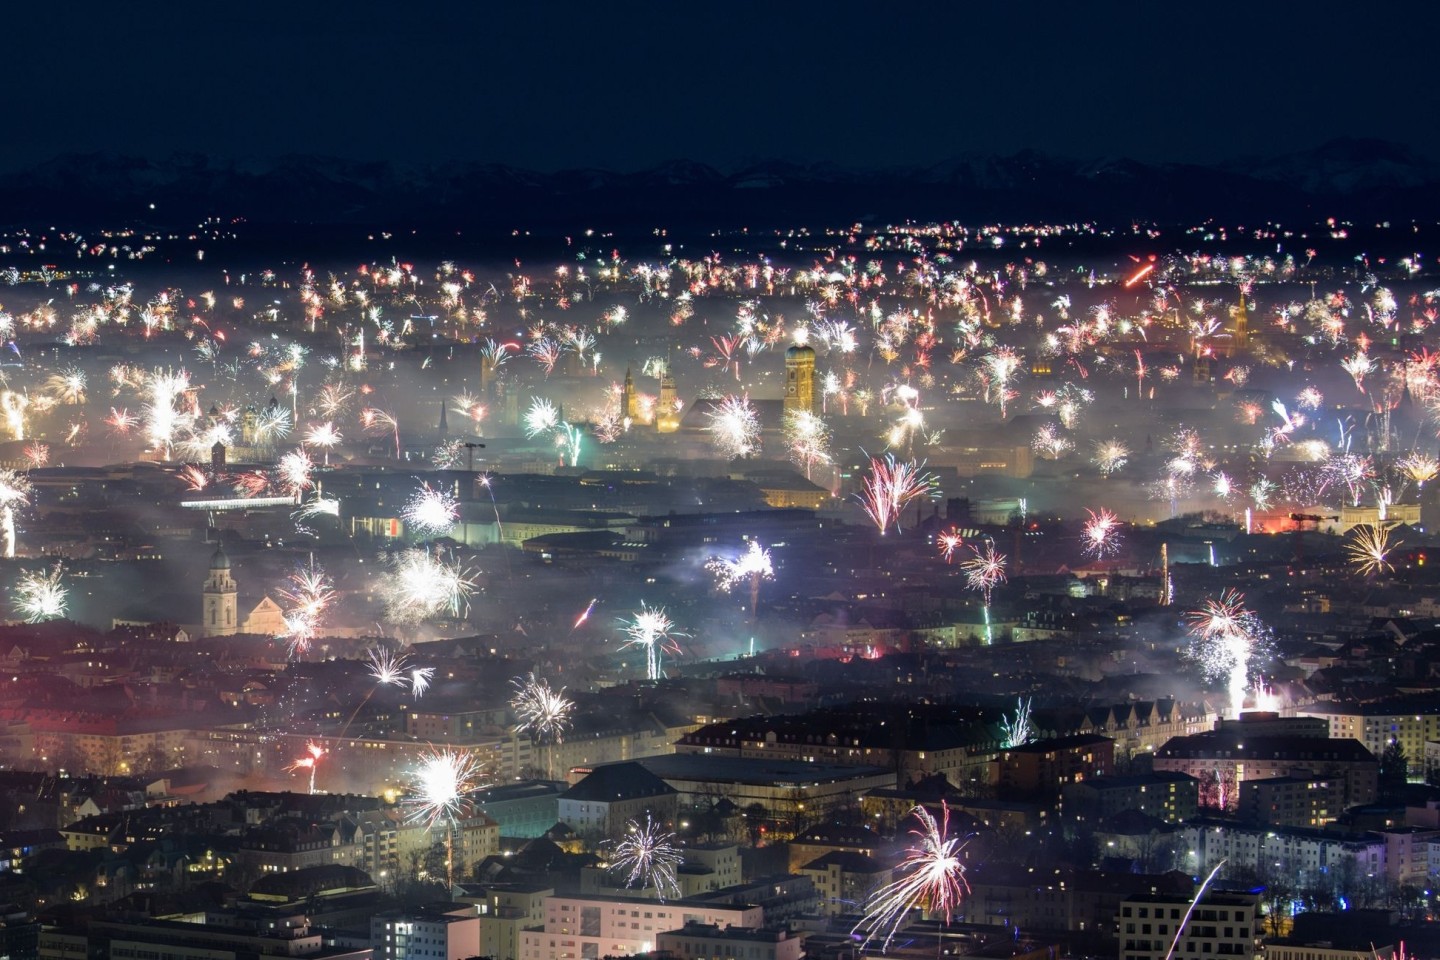 Feuerwerksraketen explodieren in der Silvesternacht 2018/19 in München.